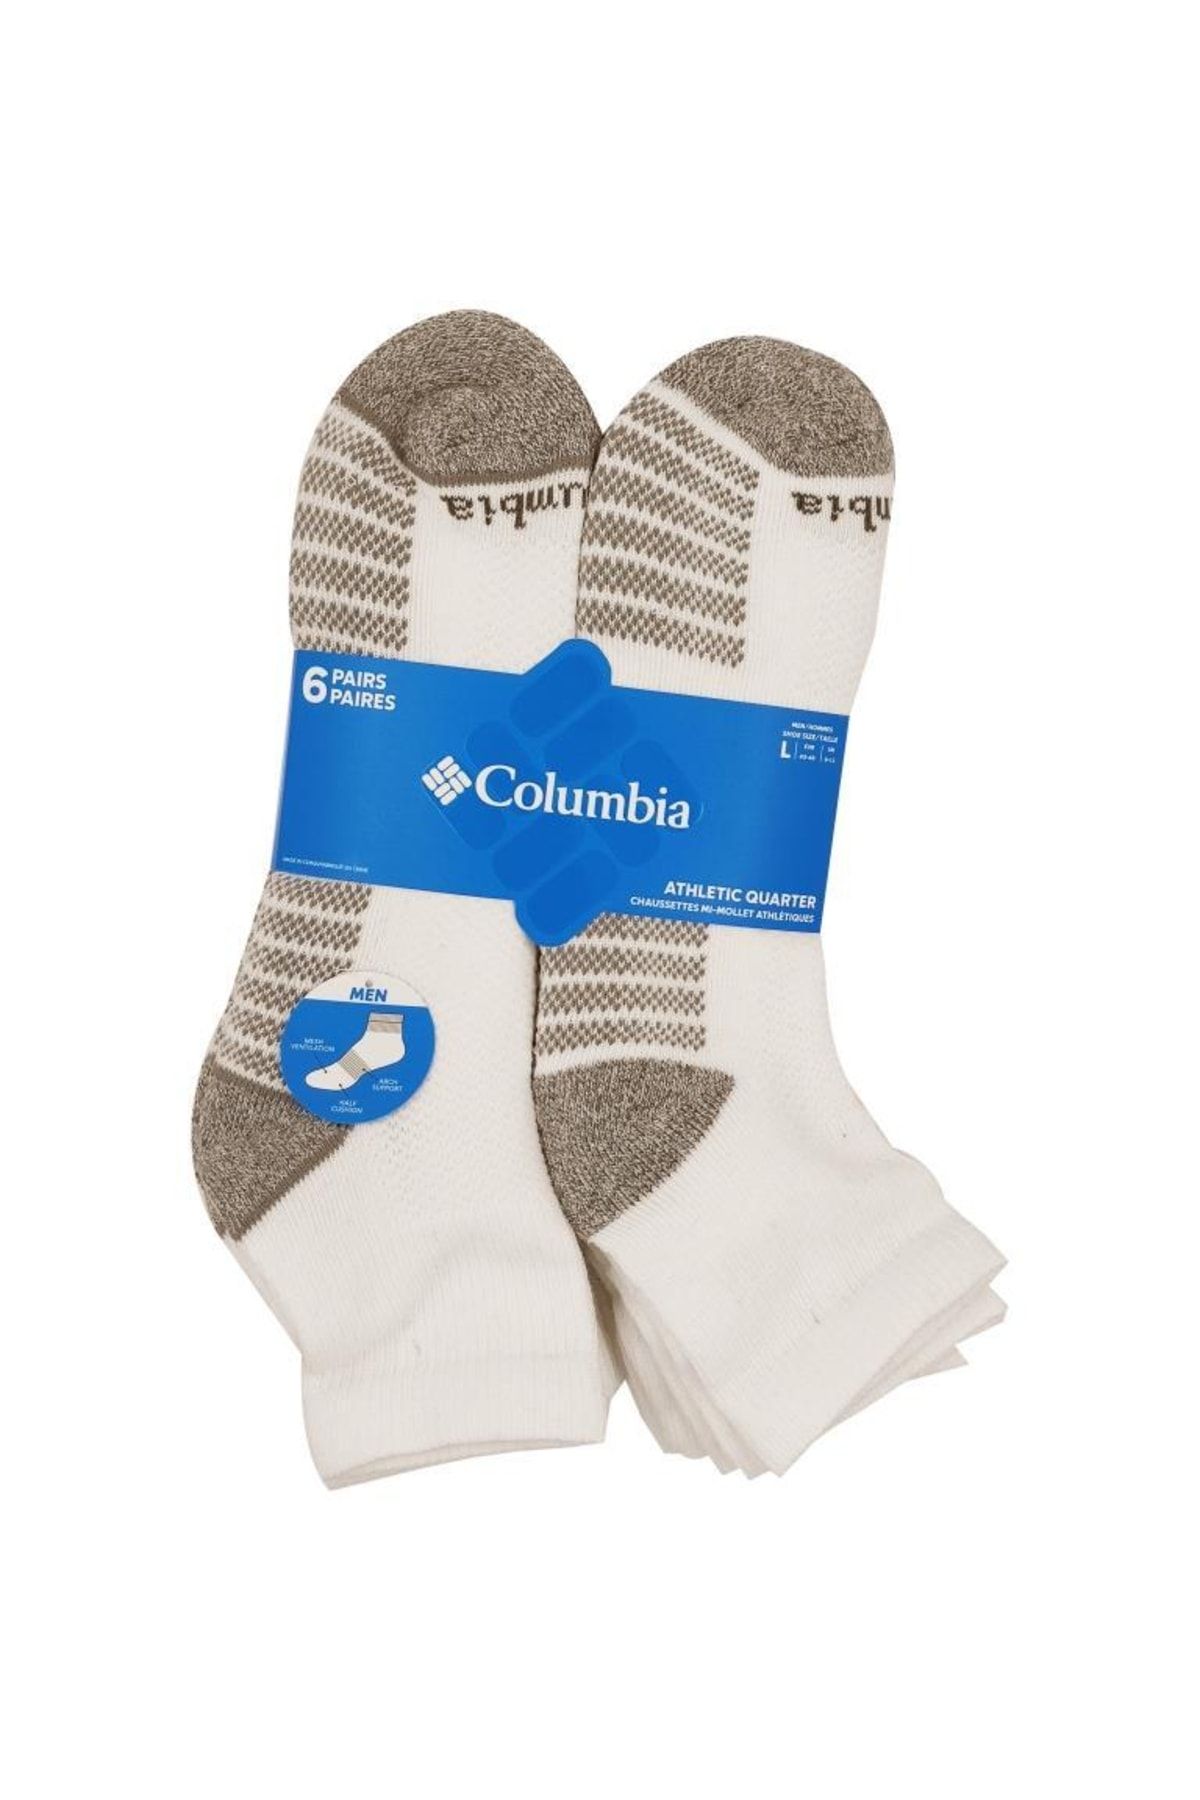 Columbia Athletic Fashion Quarter With Pique Footbed Unisex Çorap C1182w-6010